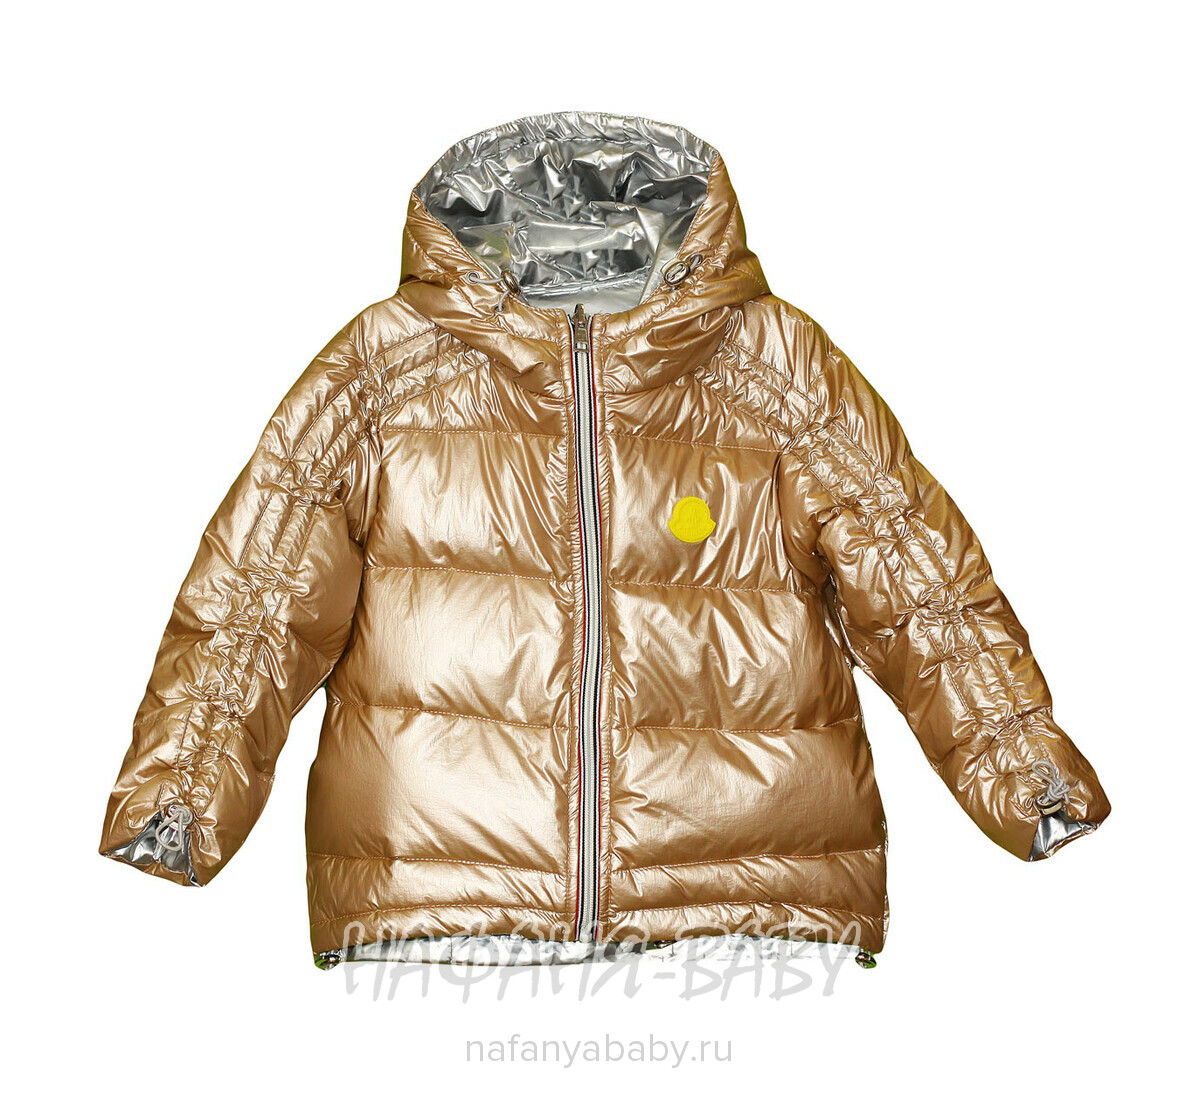 Детская демисезонная куртка L.Z.W.B.G. арт: 9880, 10-15 лет, 5-9 лет, цвет бежевый, оптом Китай (Пекин)